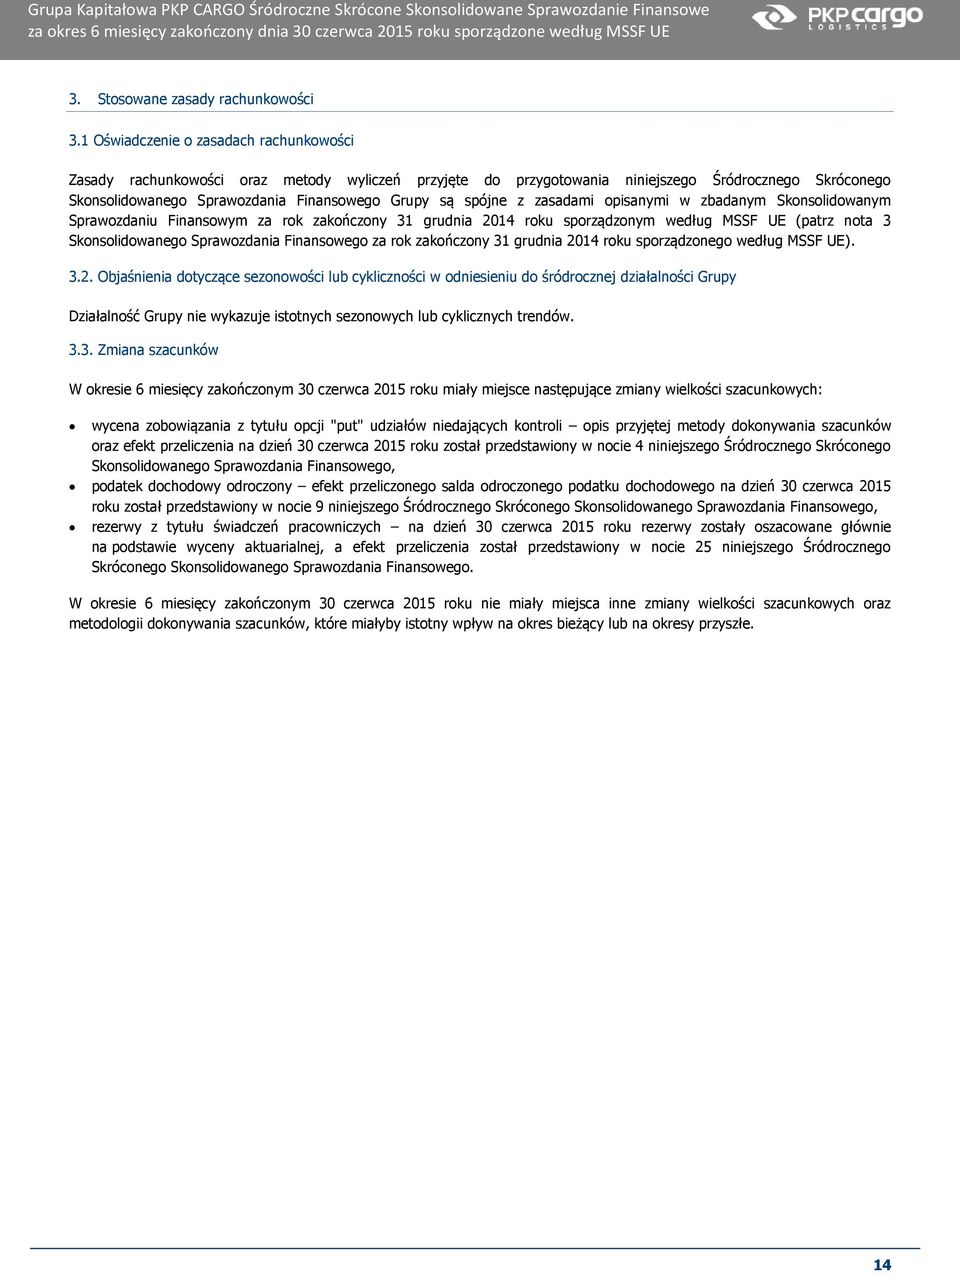 spójne z zasadami opisanymi w zbadanym Skonsolidowanym Sprawozdaniu Finansowym za rok zakończony 31 grudnia 2014 roku sporządzonym według MSSF UE (patrz nota 3 Skonsolidowanego Sprawozdania